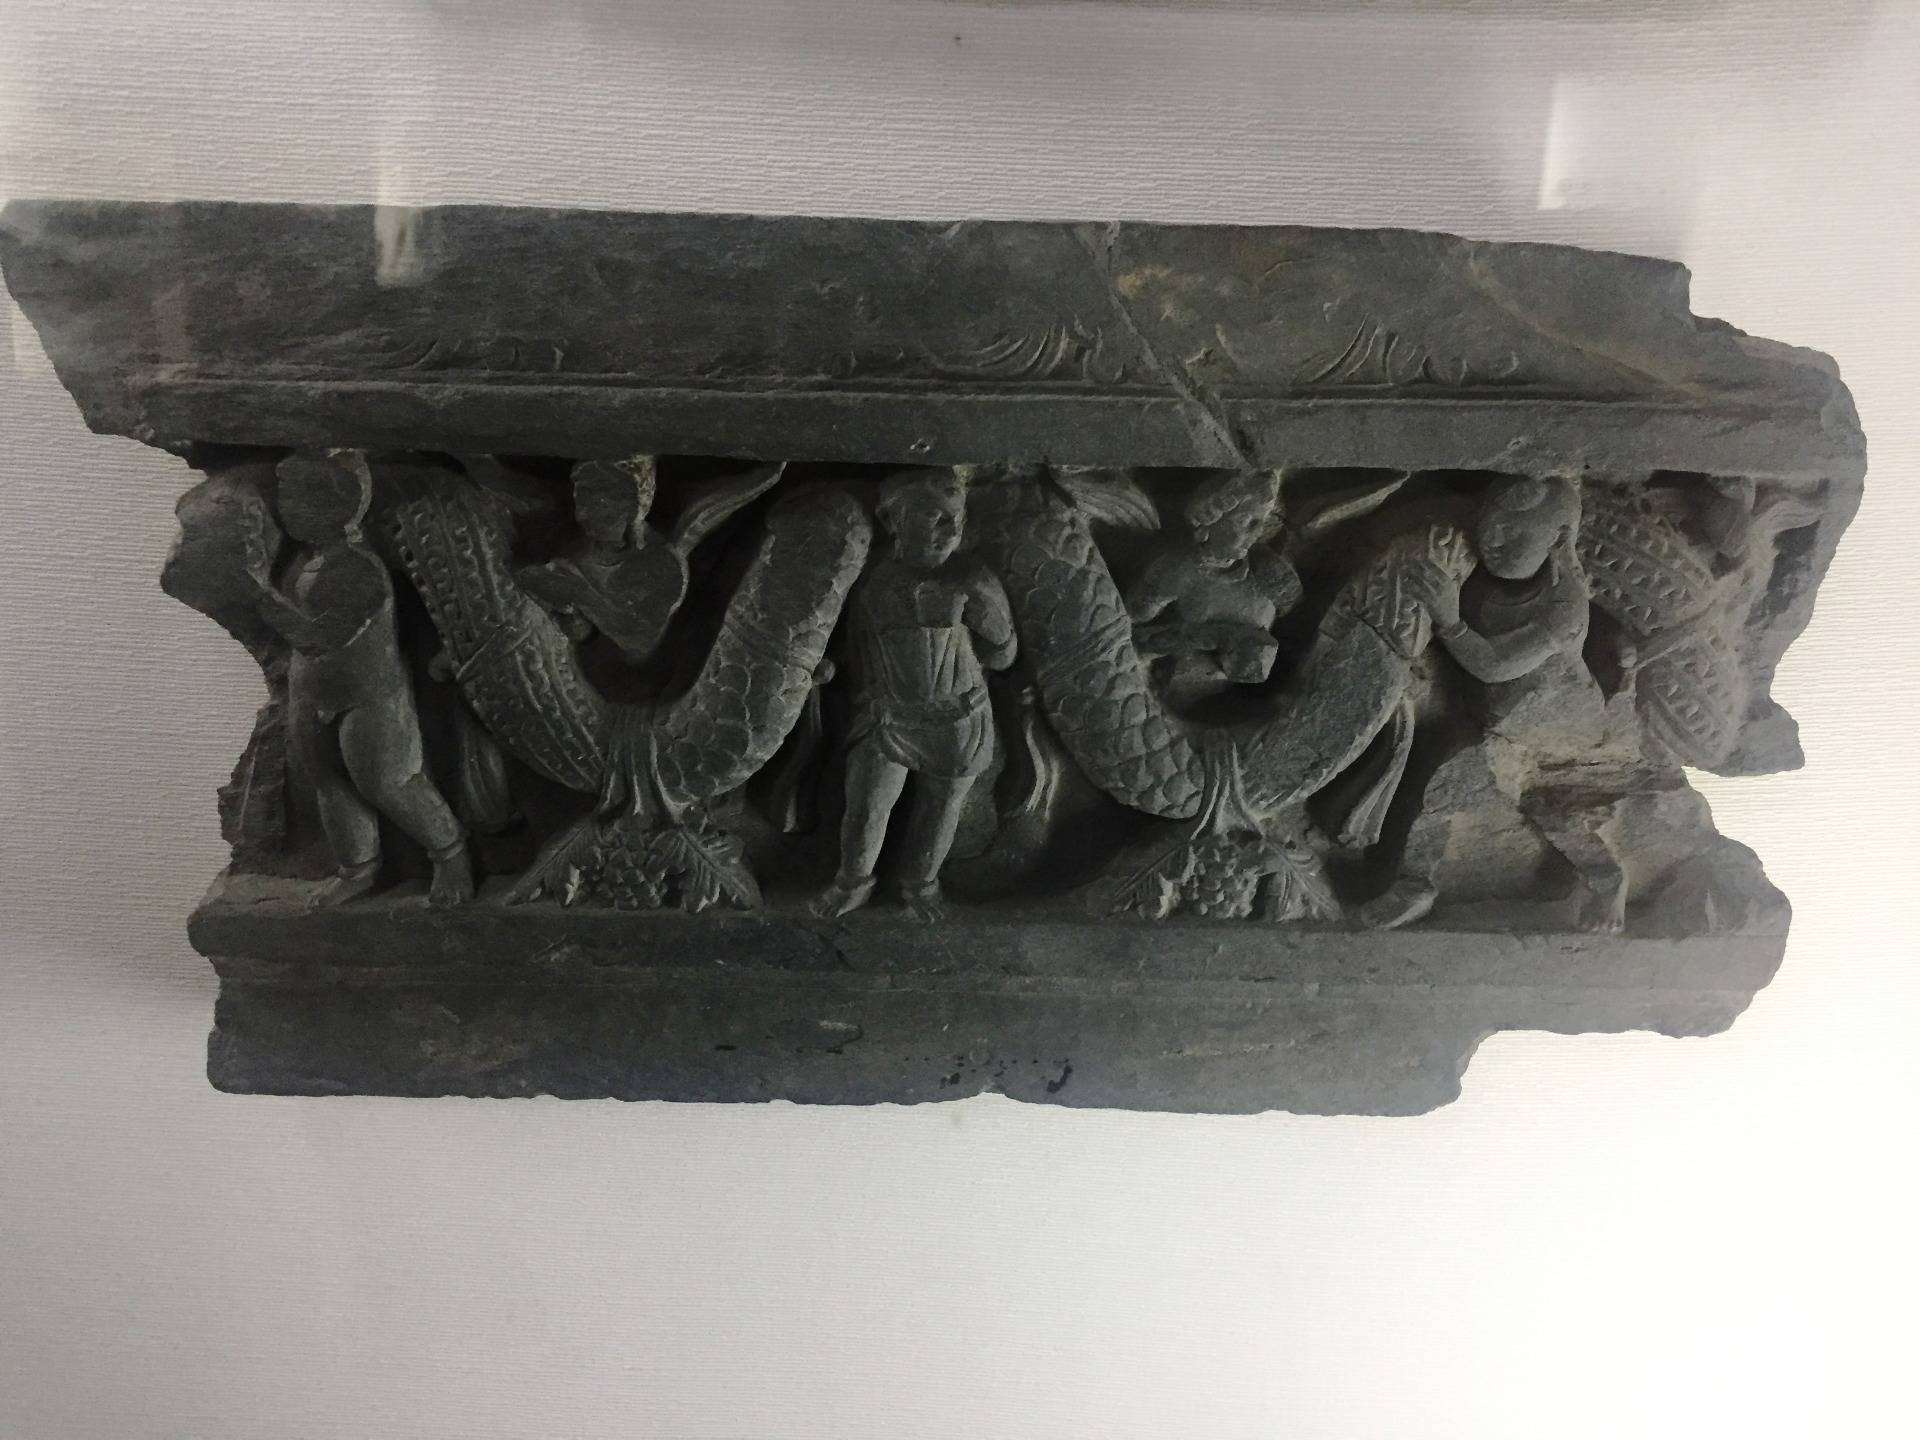 Gandhara Art Museum in Taxila (600 or 700 BC)